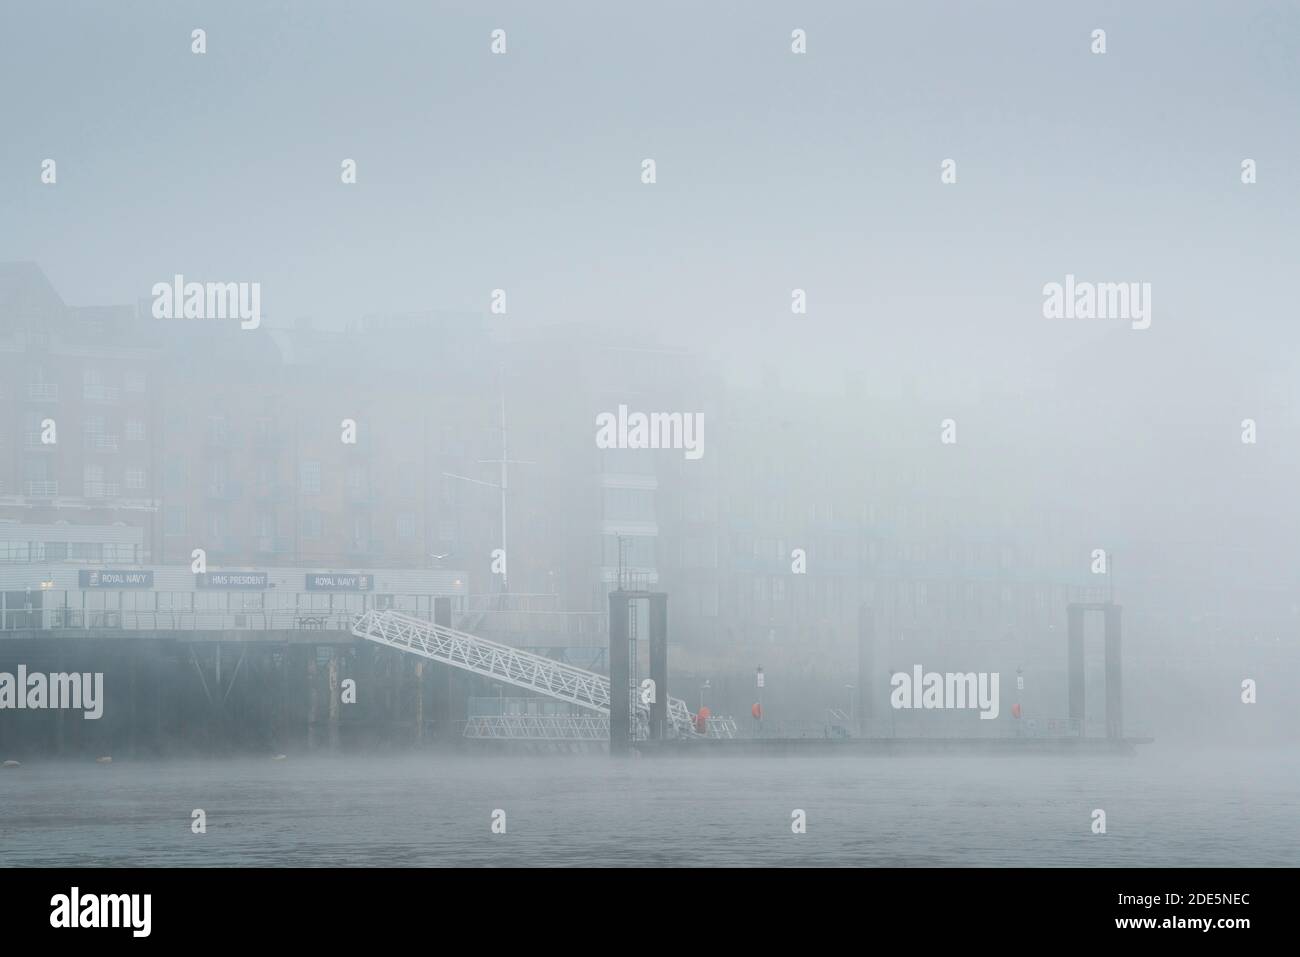 HMS President Royal Navy Reserve Pier et River Thames dans le brouillard épais et la brume par temps brumeux et brumeux pendant le confinement du coronavirus Covid-19, Angleterre, Royaume-Uni Banque D'Images